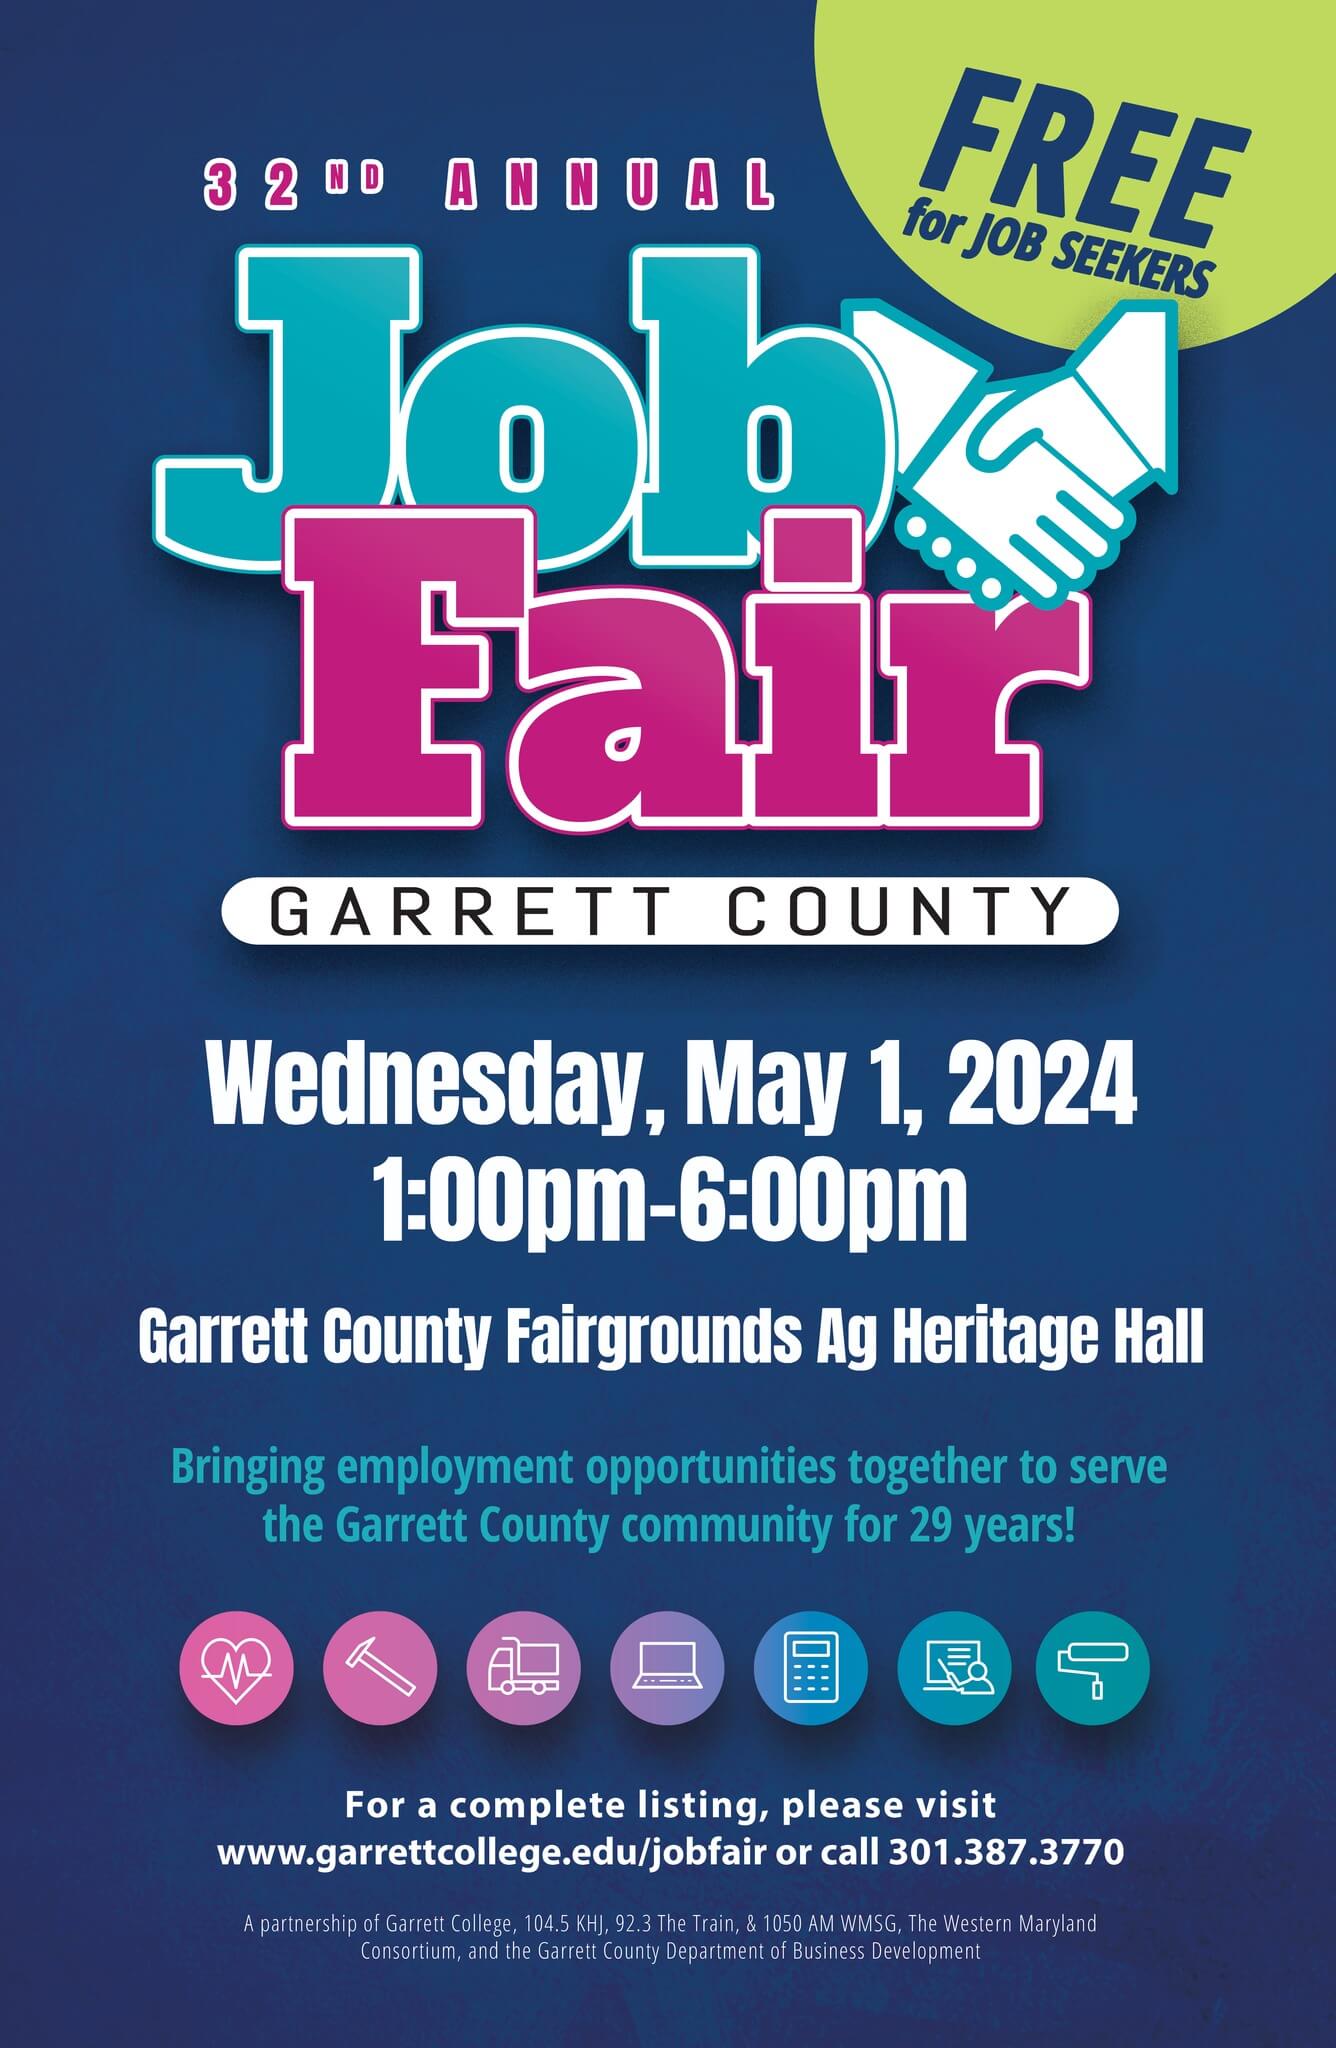 32nd Annual Garrett County Job Fair at Deep Creek Lake, MD